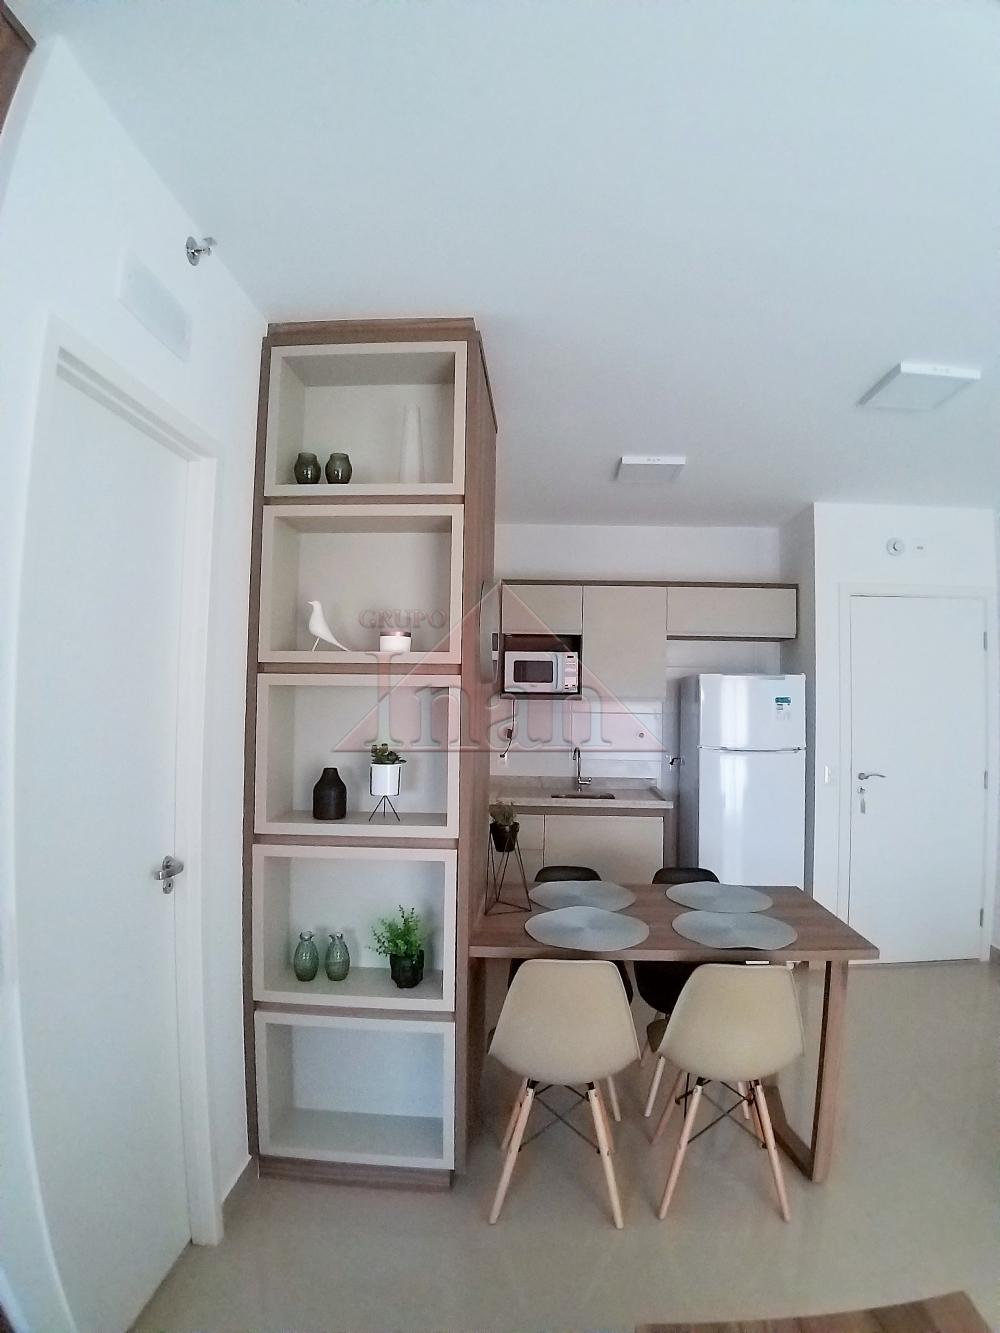 Alugar Apartamentos / Apartamento em Ribeirão Preto R$ 2.000,00 - Foto 16